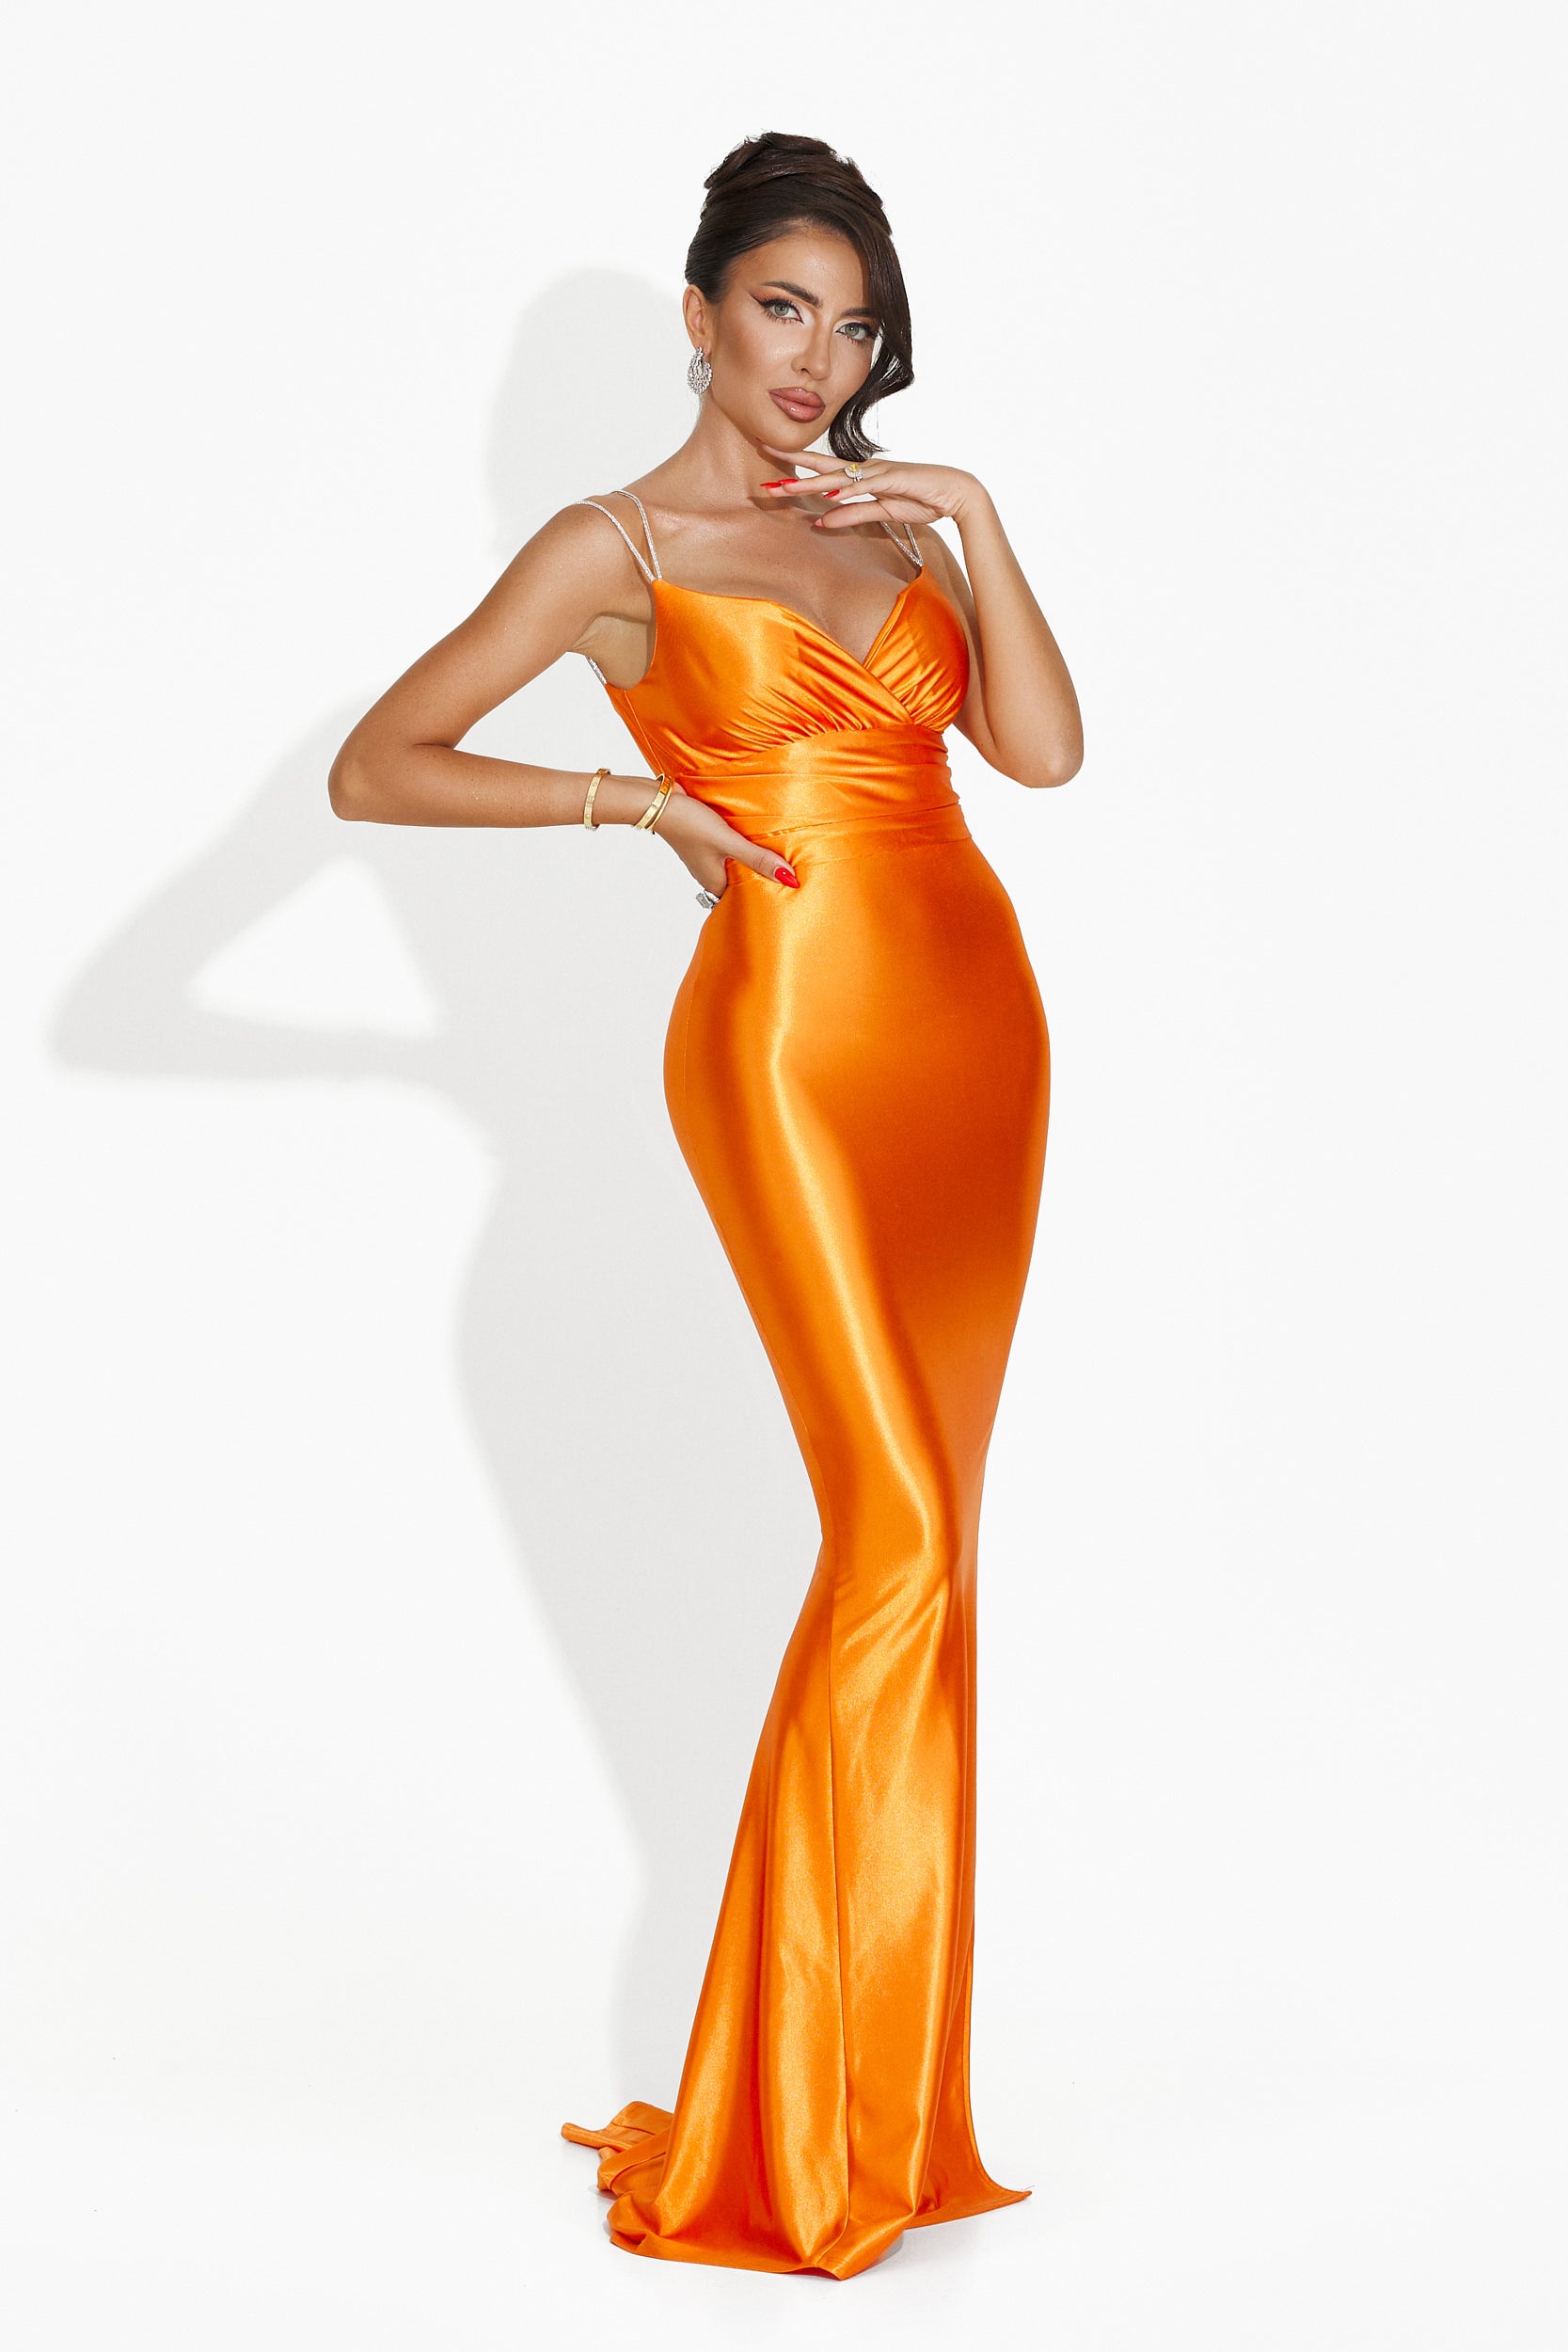 Meliana Bogas hosszú narancssárga női ruha